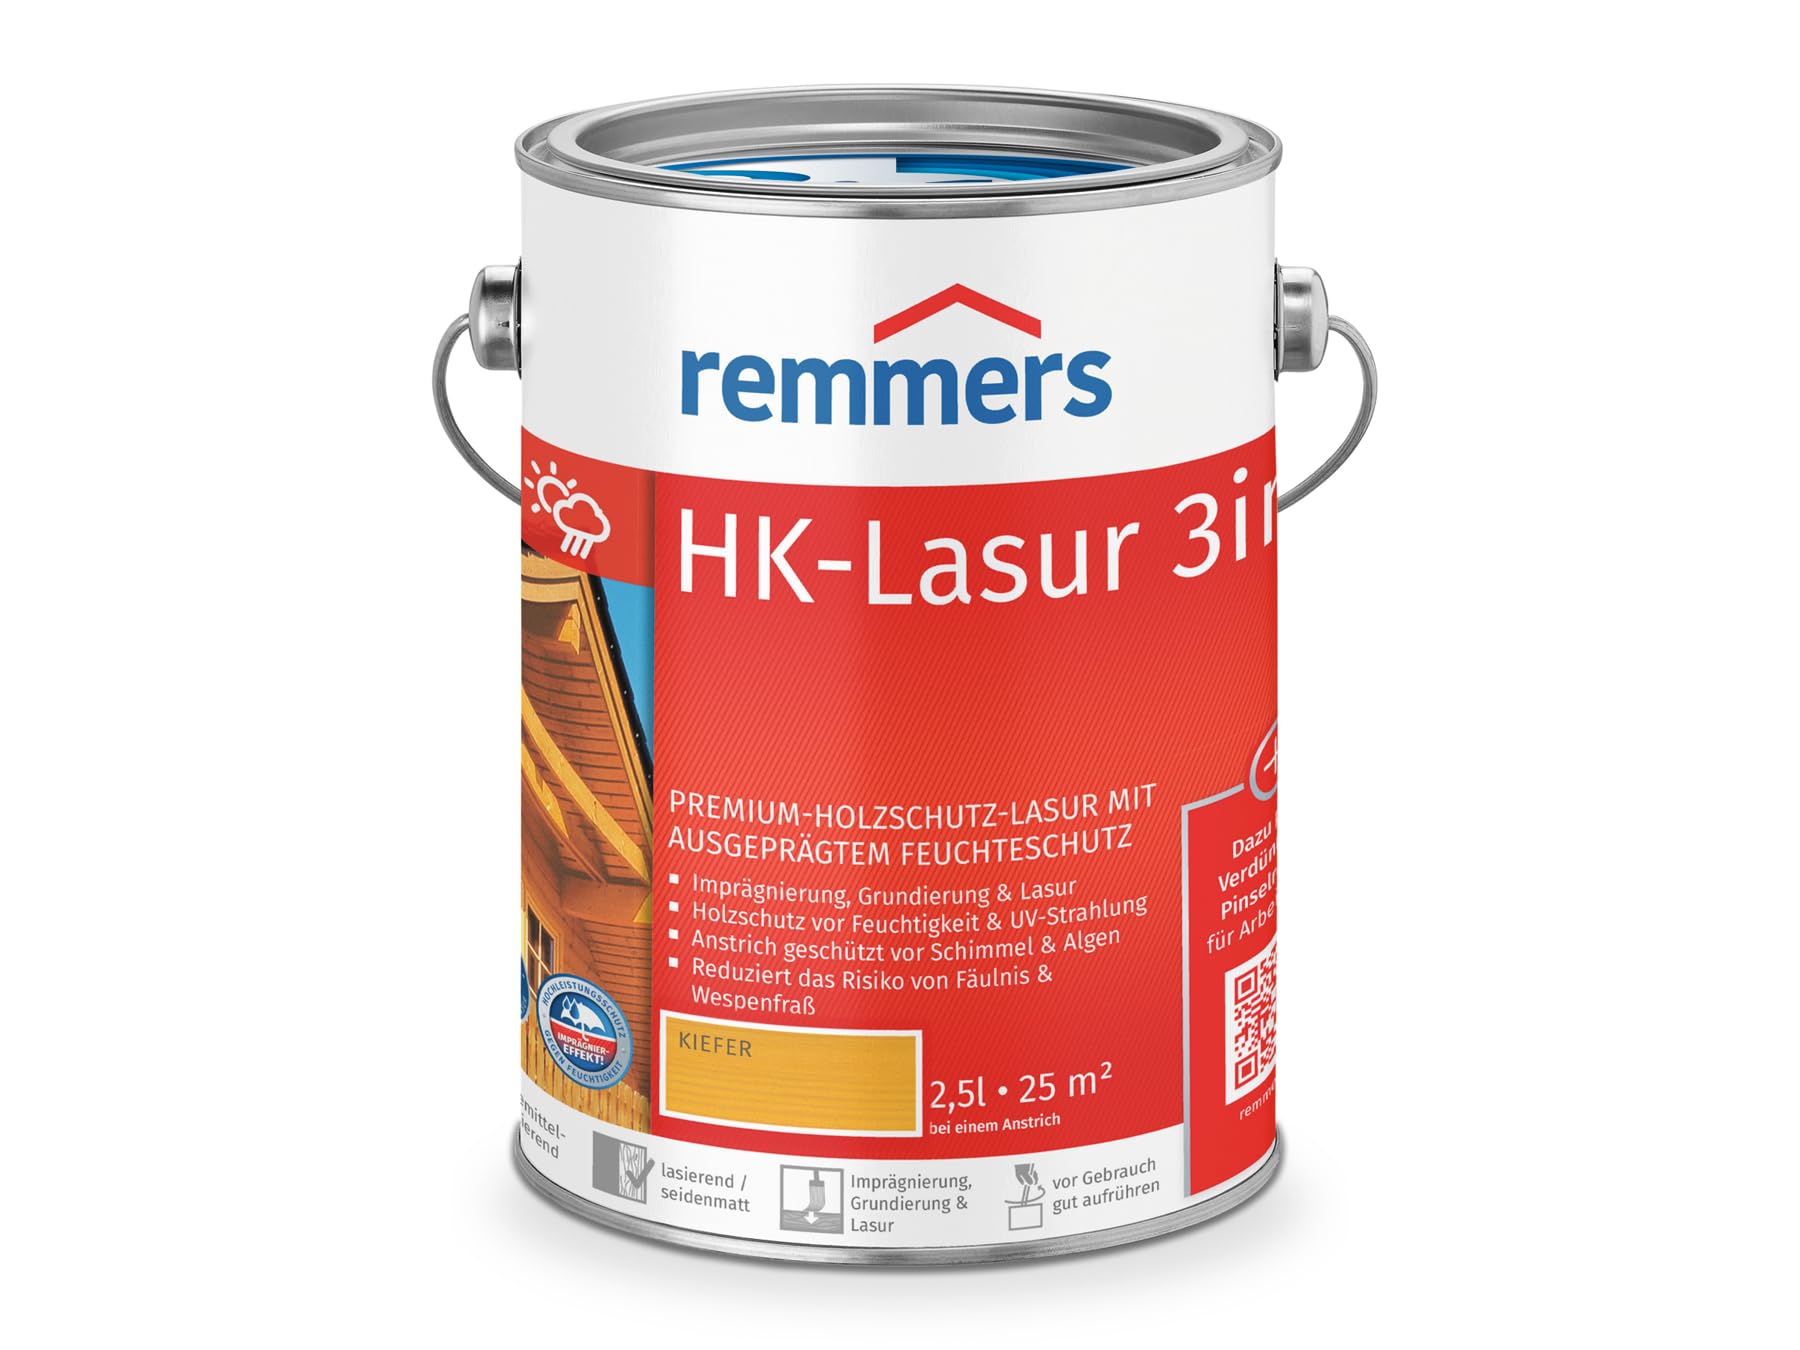 Remmers HK-Lasur 3in1 kiefer, 2,5 Liter, Holzlasur aussen, 3facher Holzschutz mit Imprägnierung + Grundierung + Lasur, Feuchtigkeit- und UV-Schutz